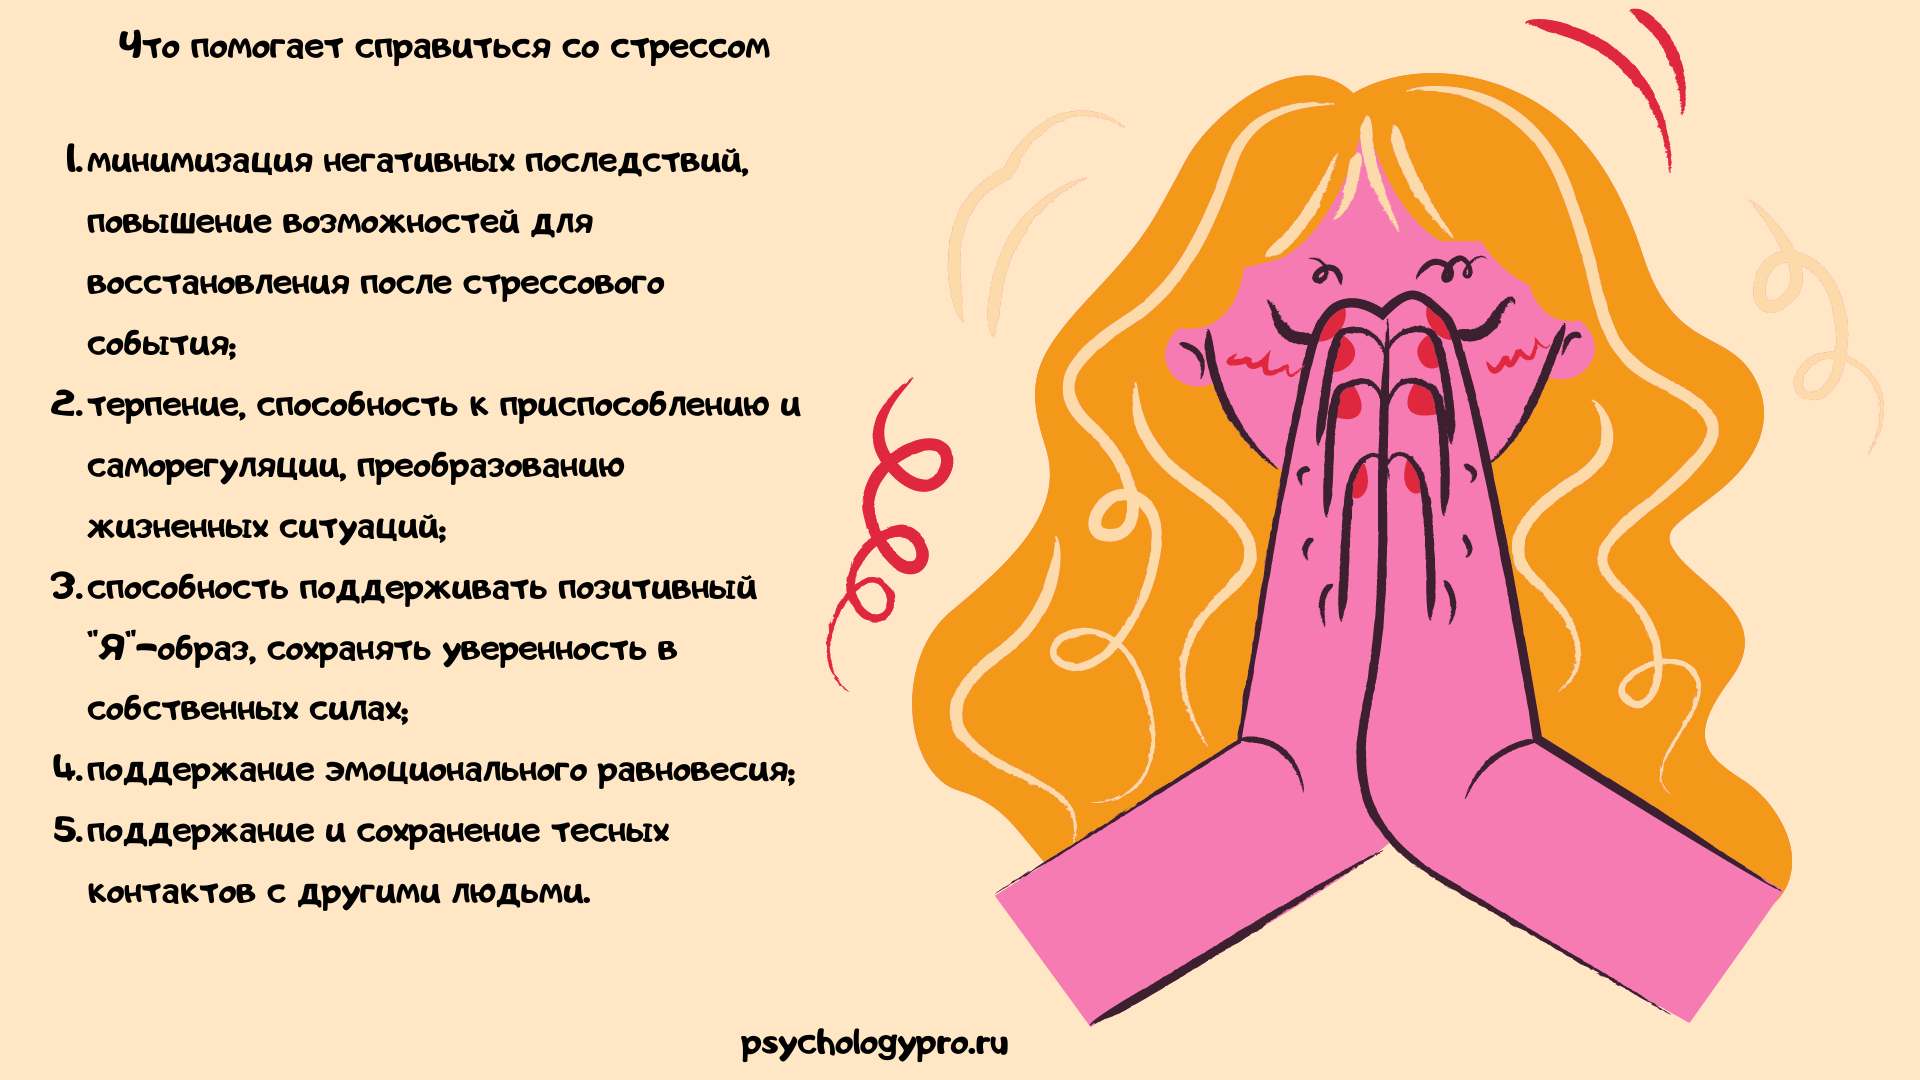 психологический фактор стресса